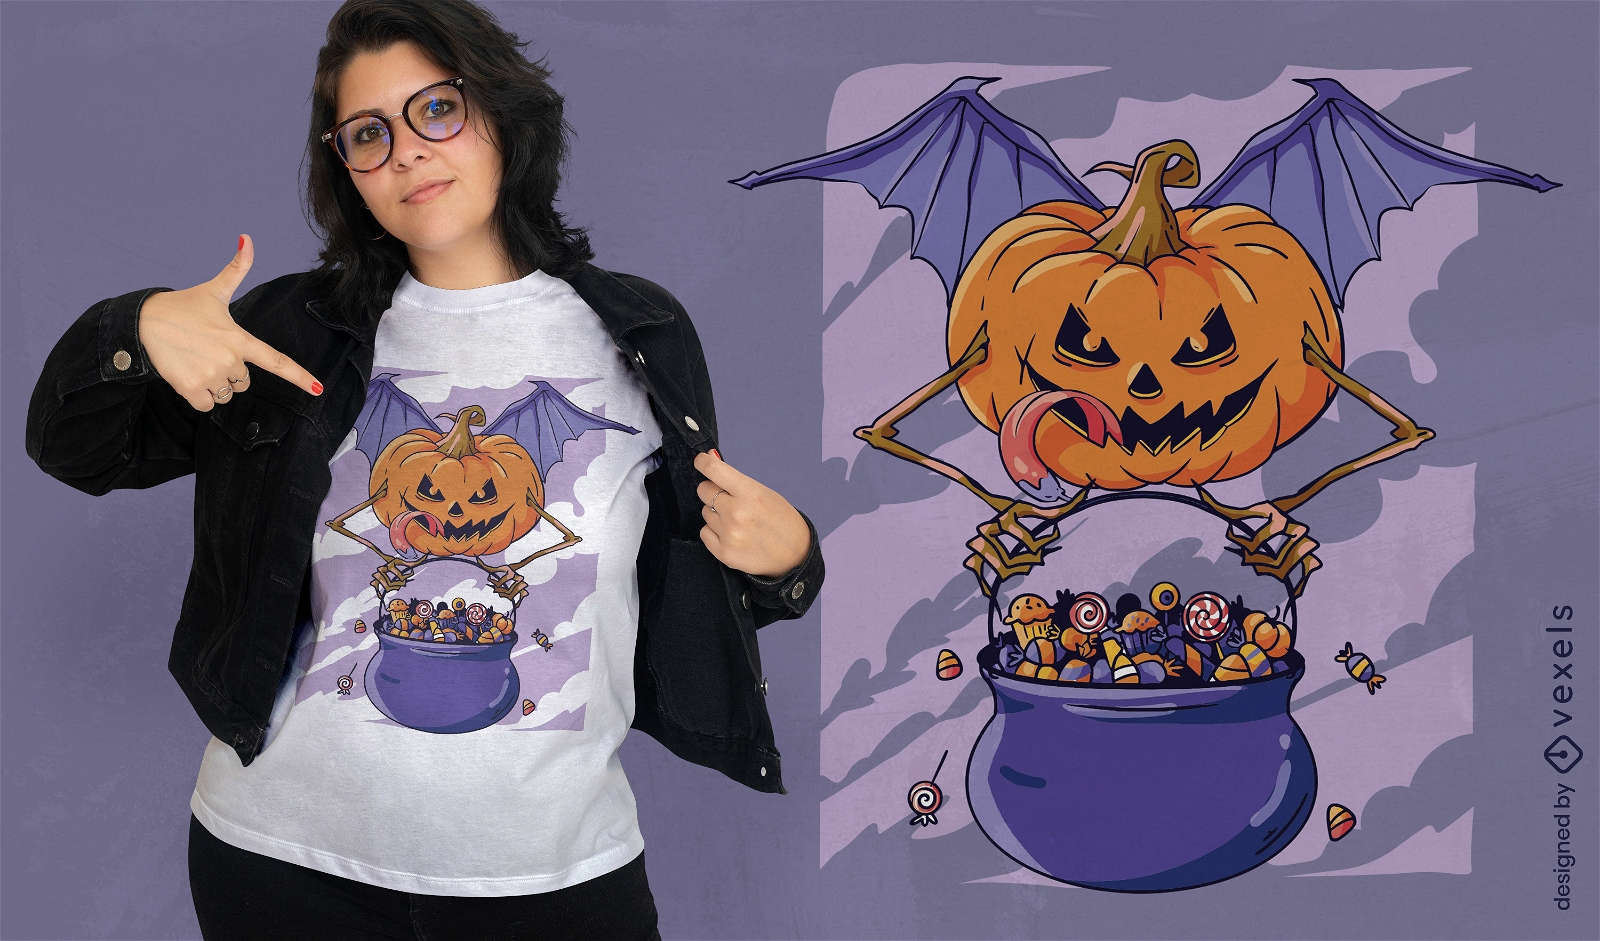 Halloween pumpkin with wings t-shirt design